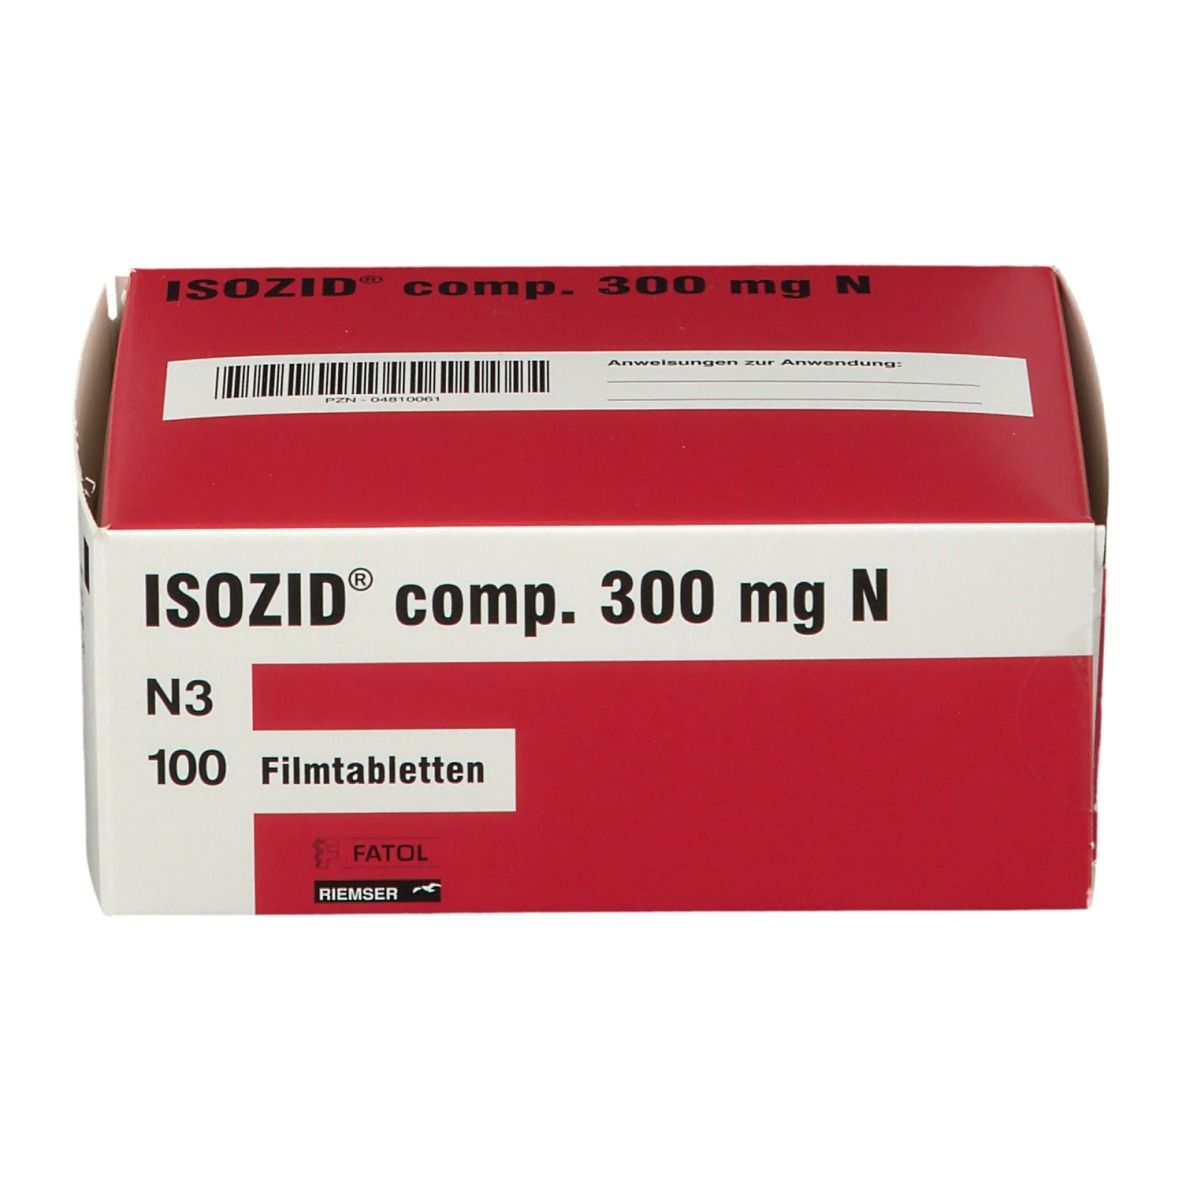 ISOZID® comp. 300 mg N